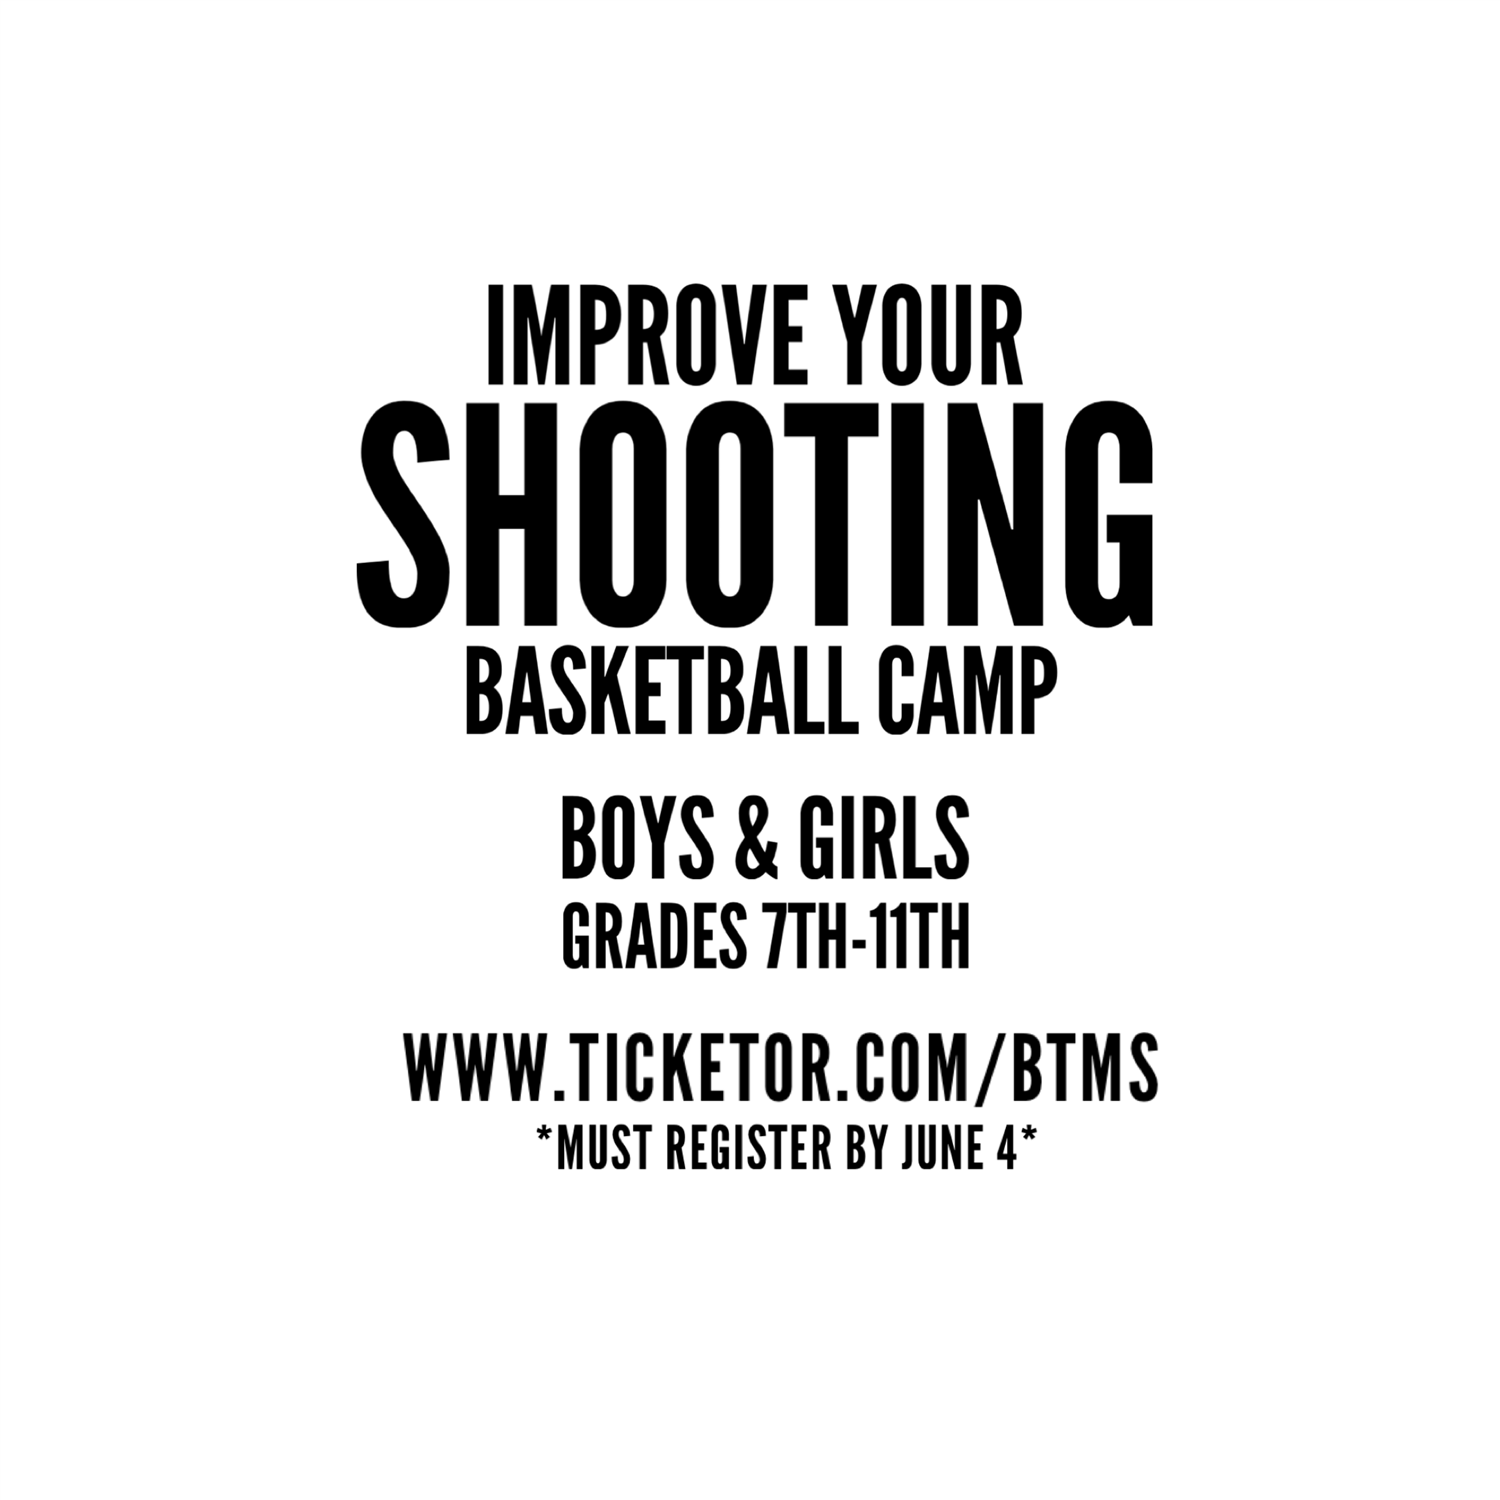 Improve Your Shooting Basketball Camp Boys & Girls Grades 7th-11th on juin 05, 19:00@Moraine Valley - Achetez des billets et obtenez des informations surBTMS LLC 